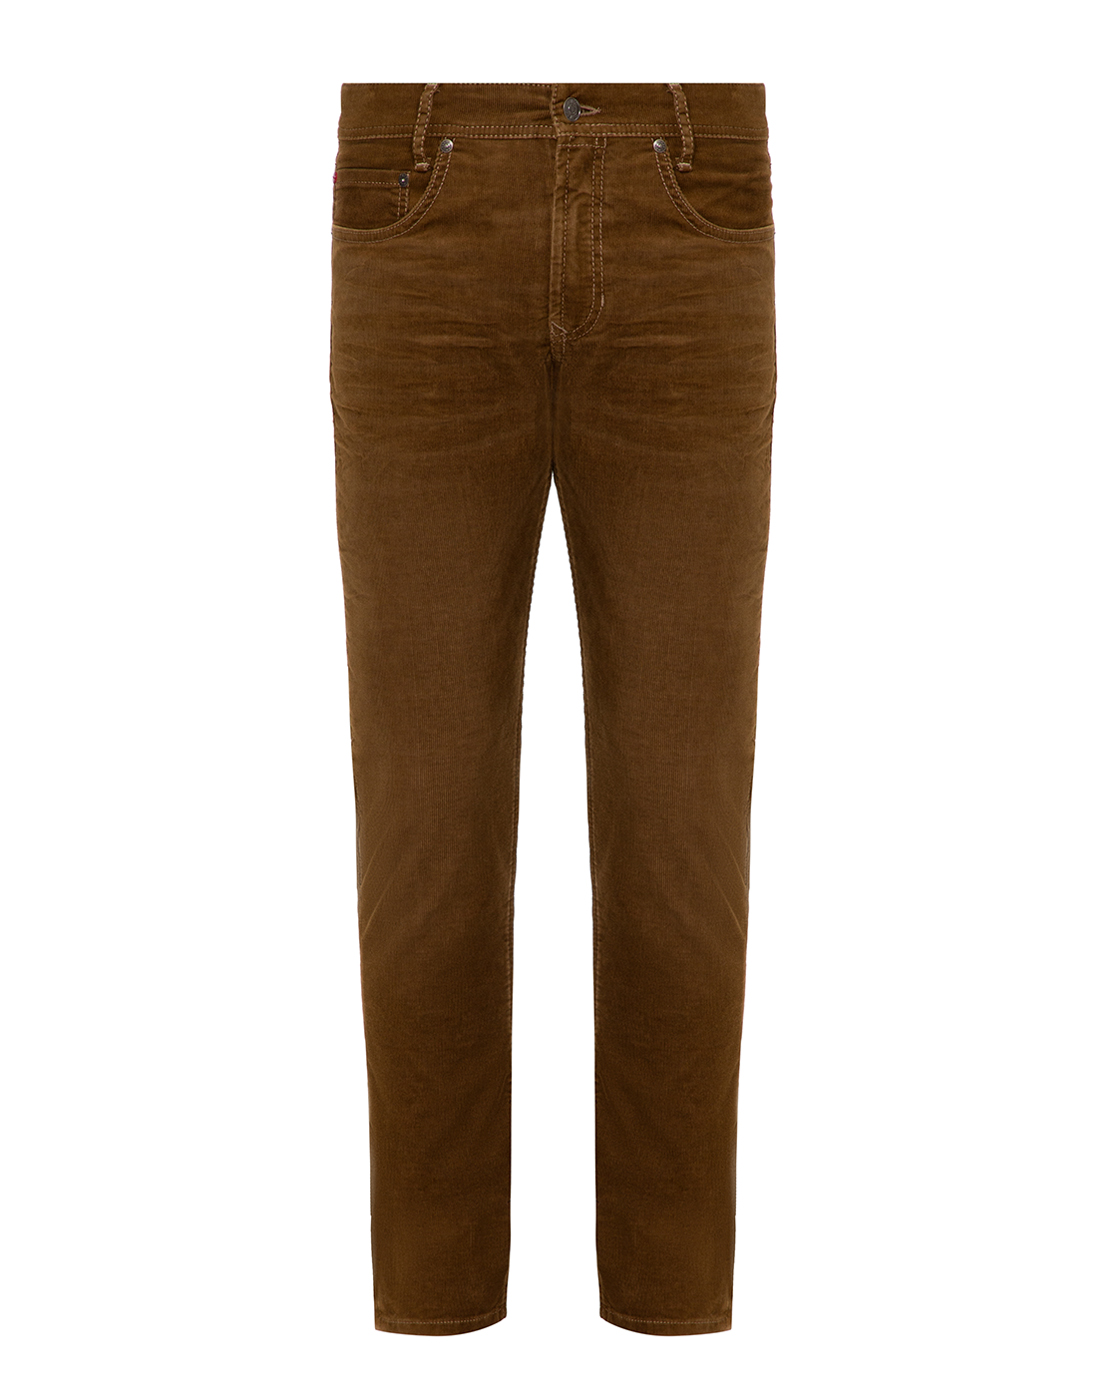 Мужские коричневые вельветовые джинсы MAC S0518 00 0620 265-1